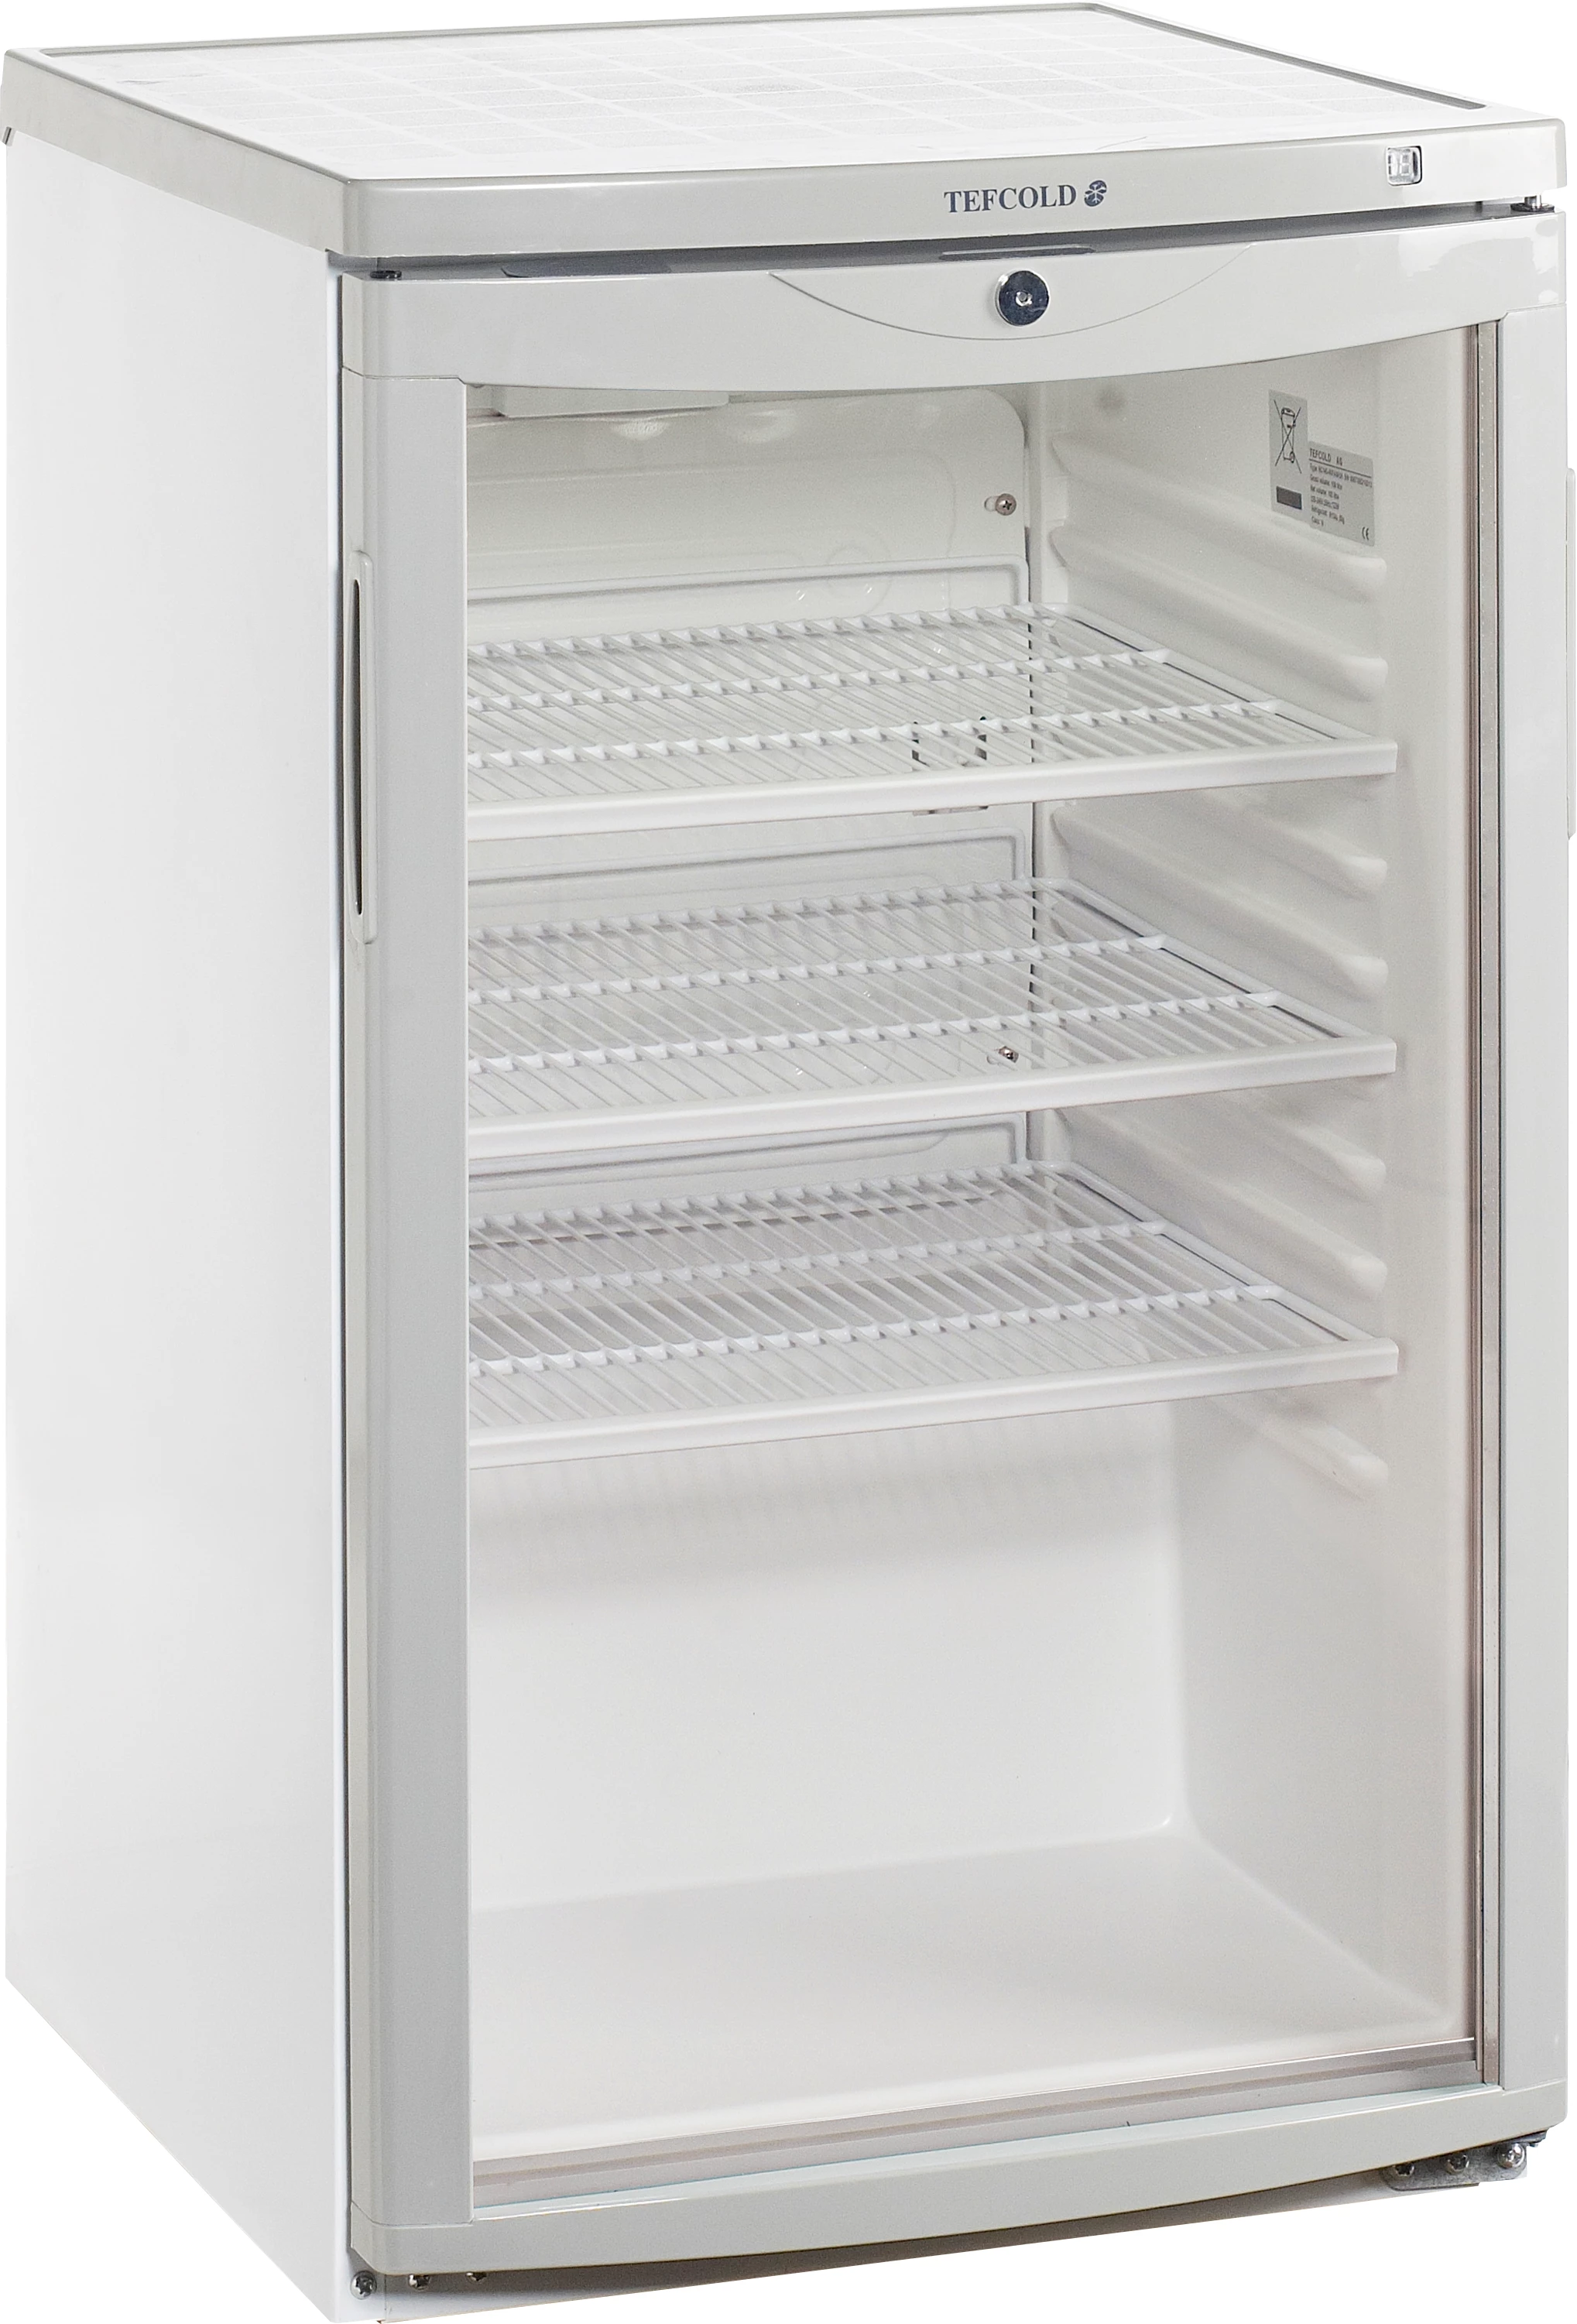 Tefcold BC145 W/FAN displaykøleskab